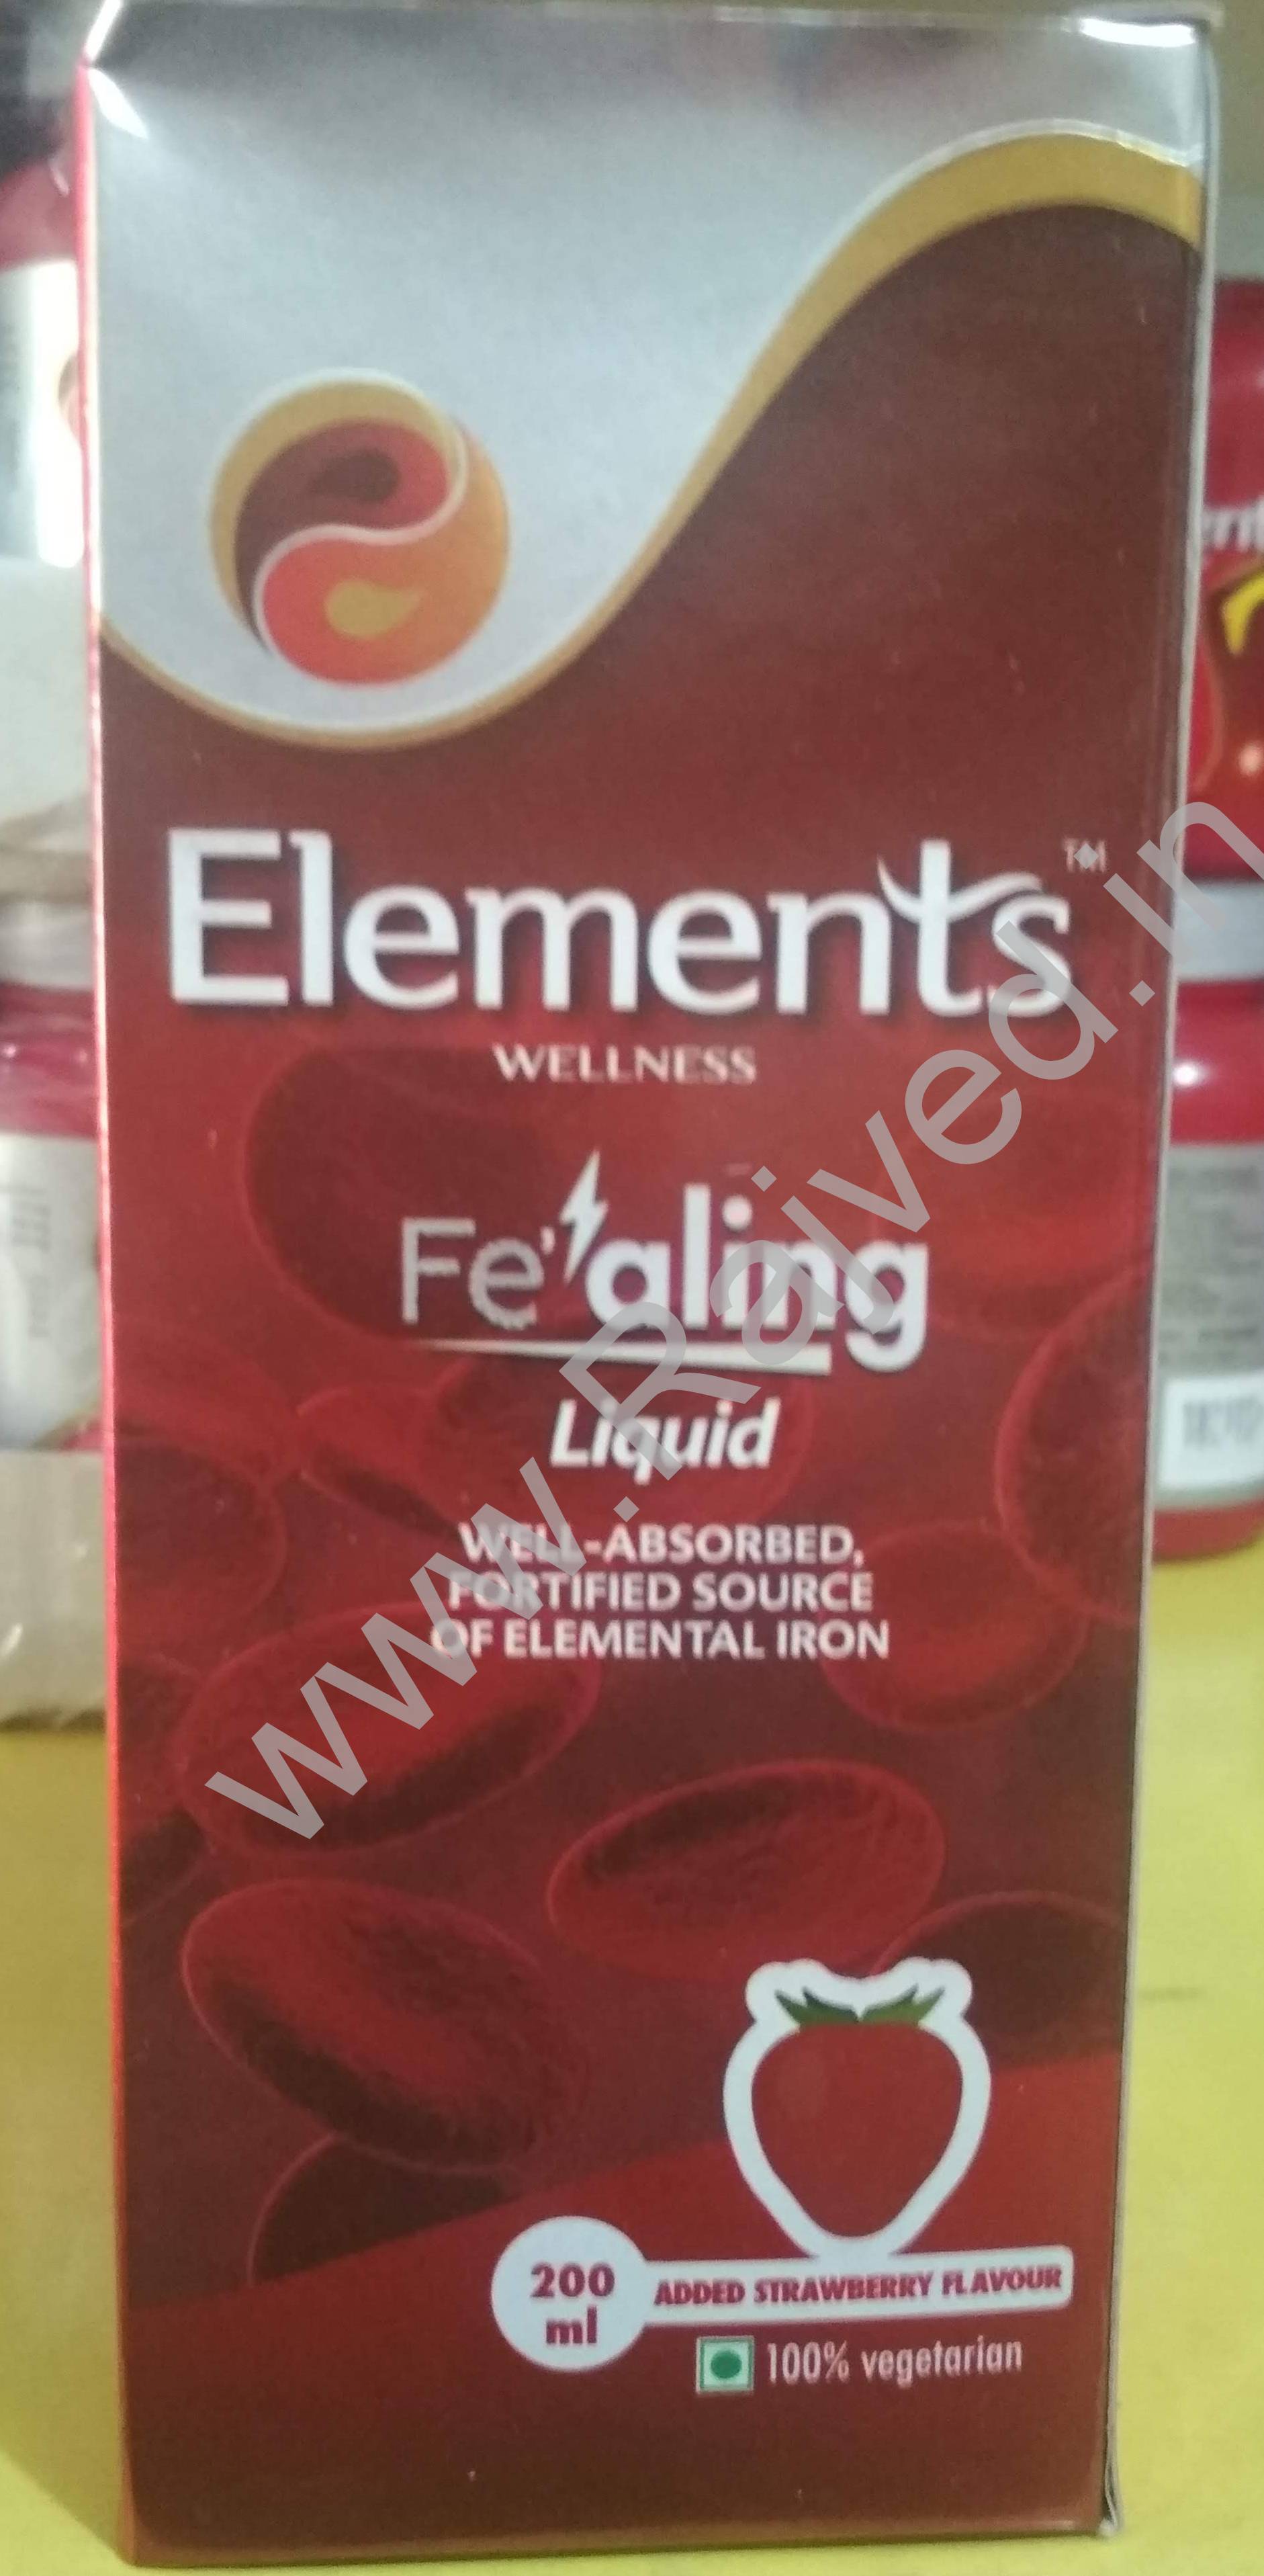 fealing liquid 200ml elements